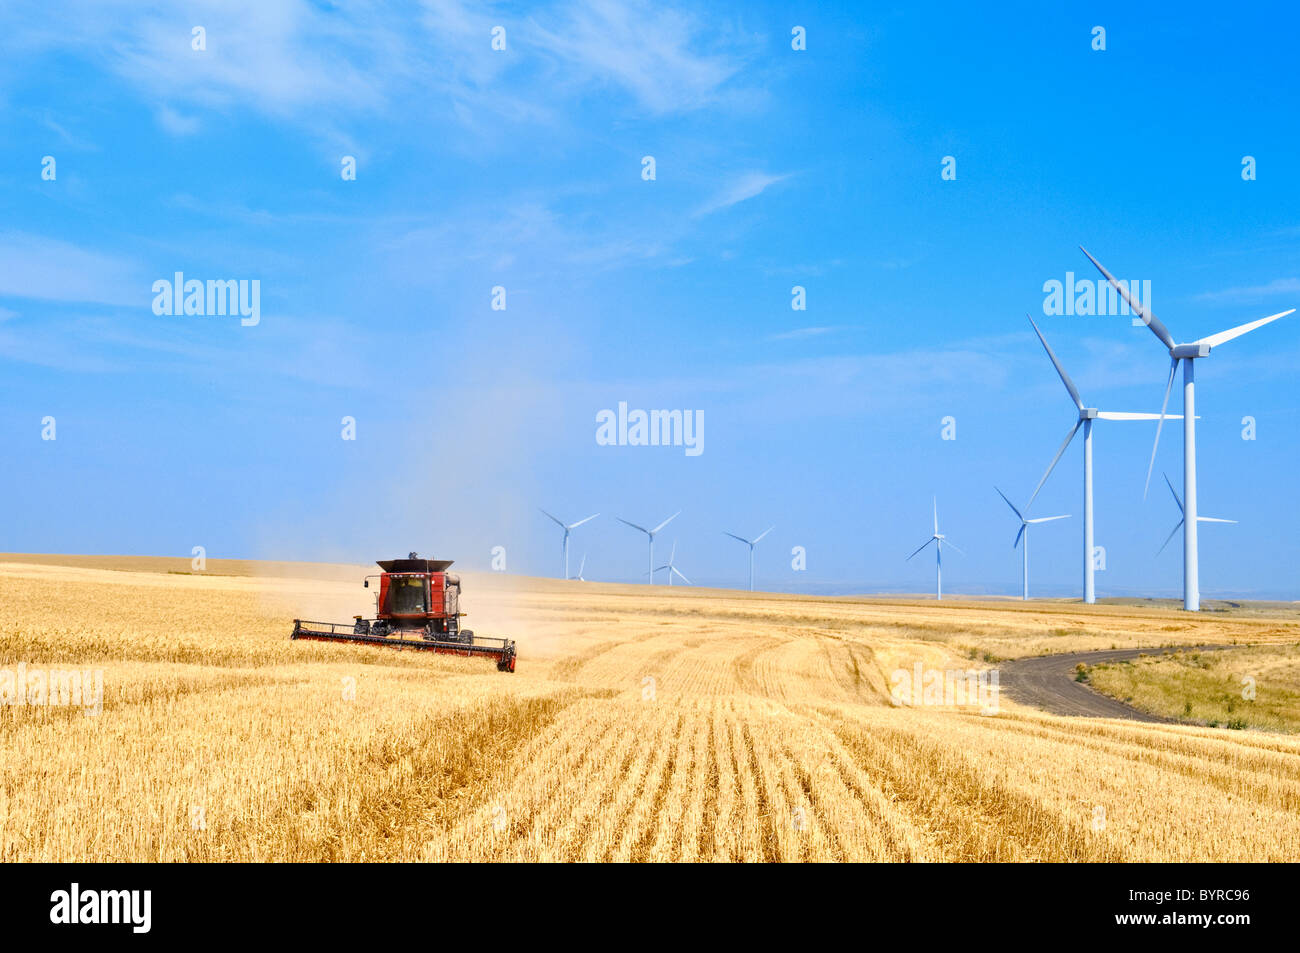 Un Case IH combinare i raccolti di frumento con una fila di grandi turbine eoliche lungo il perimetro del campo / WASHINGTON, STATI UNITI D'AMERICA. Foto Stock